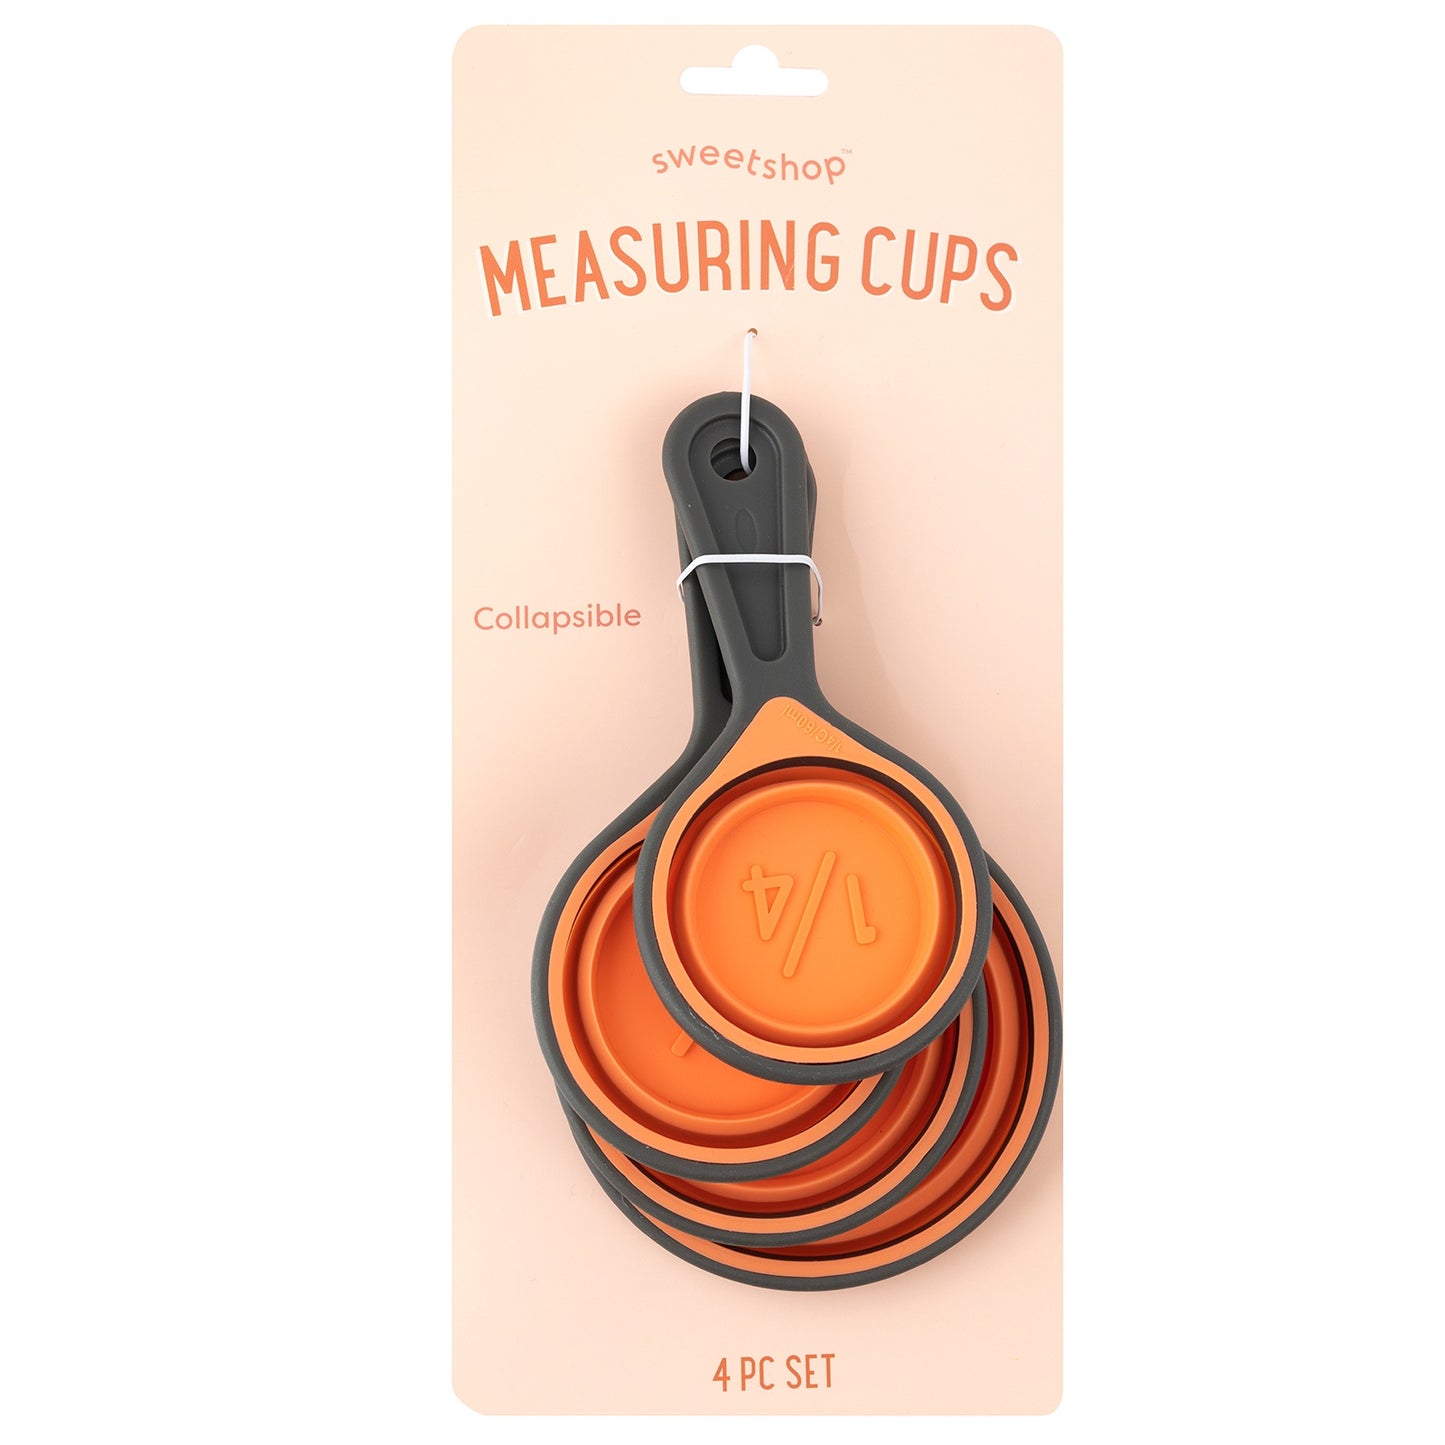 Sweetshop Measuring Cup Set